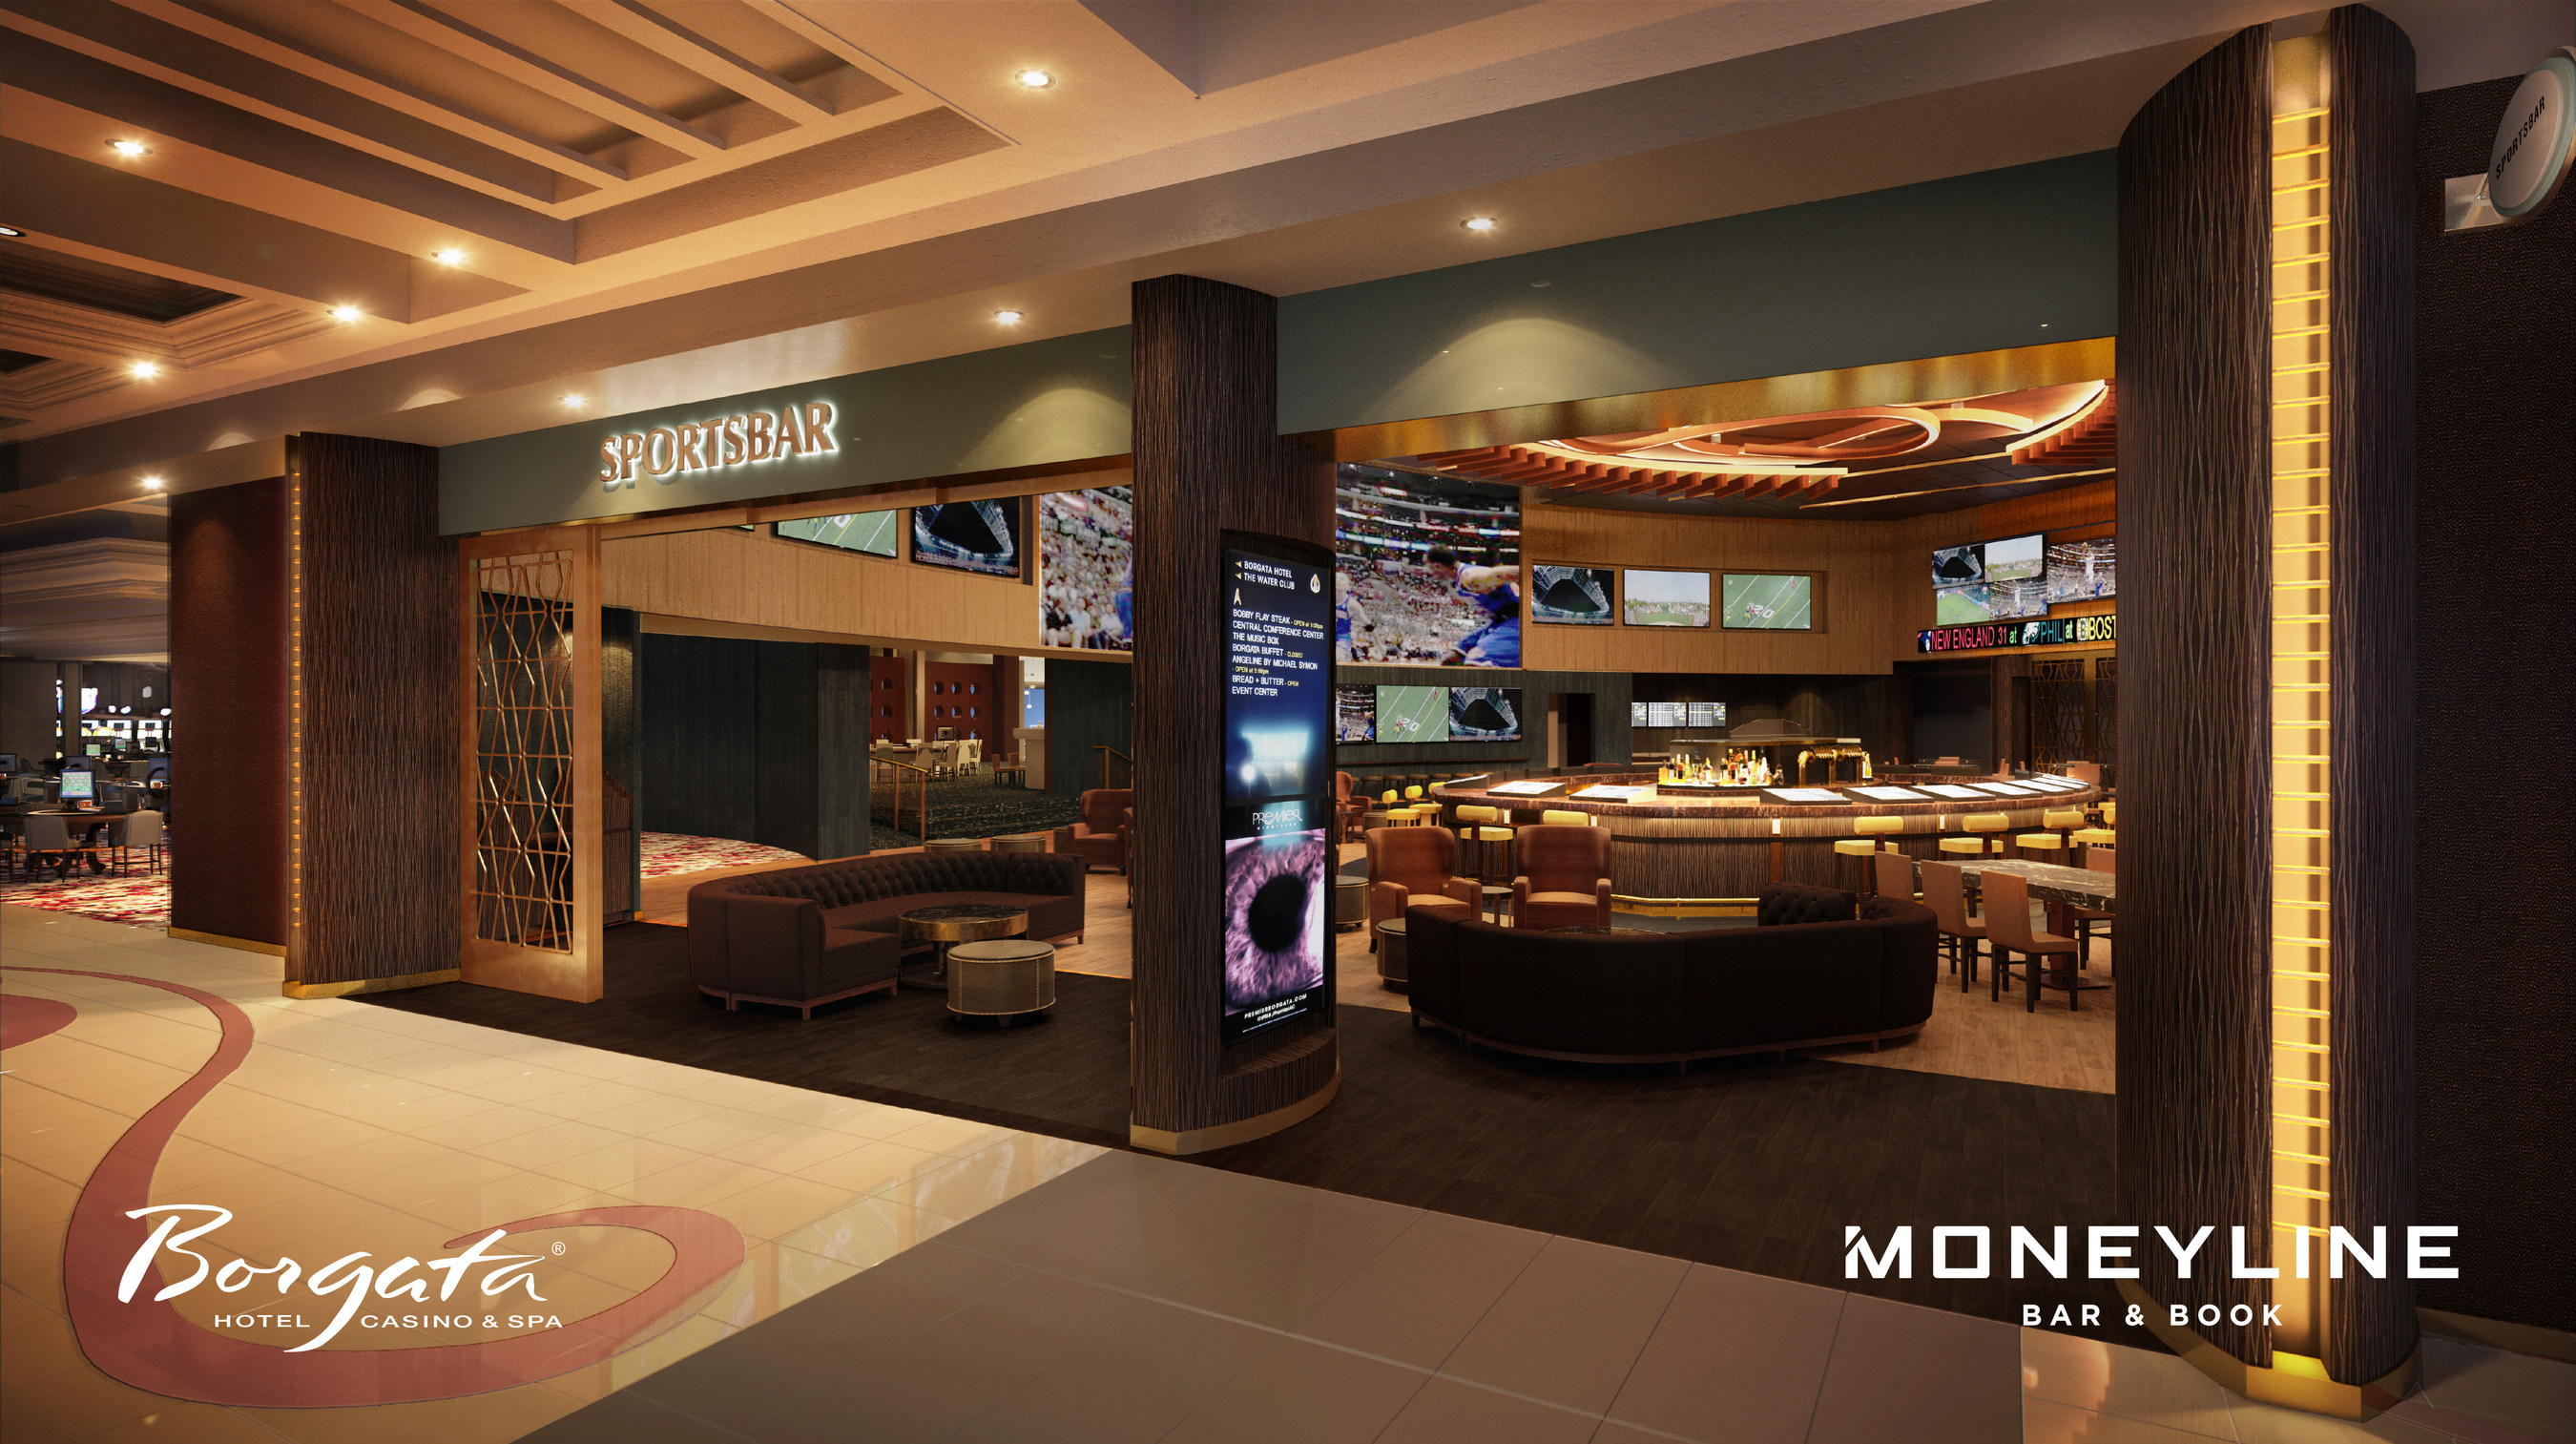 Borgata Hotel Casino Spa Announces Debut Of Moneyline Bar Book